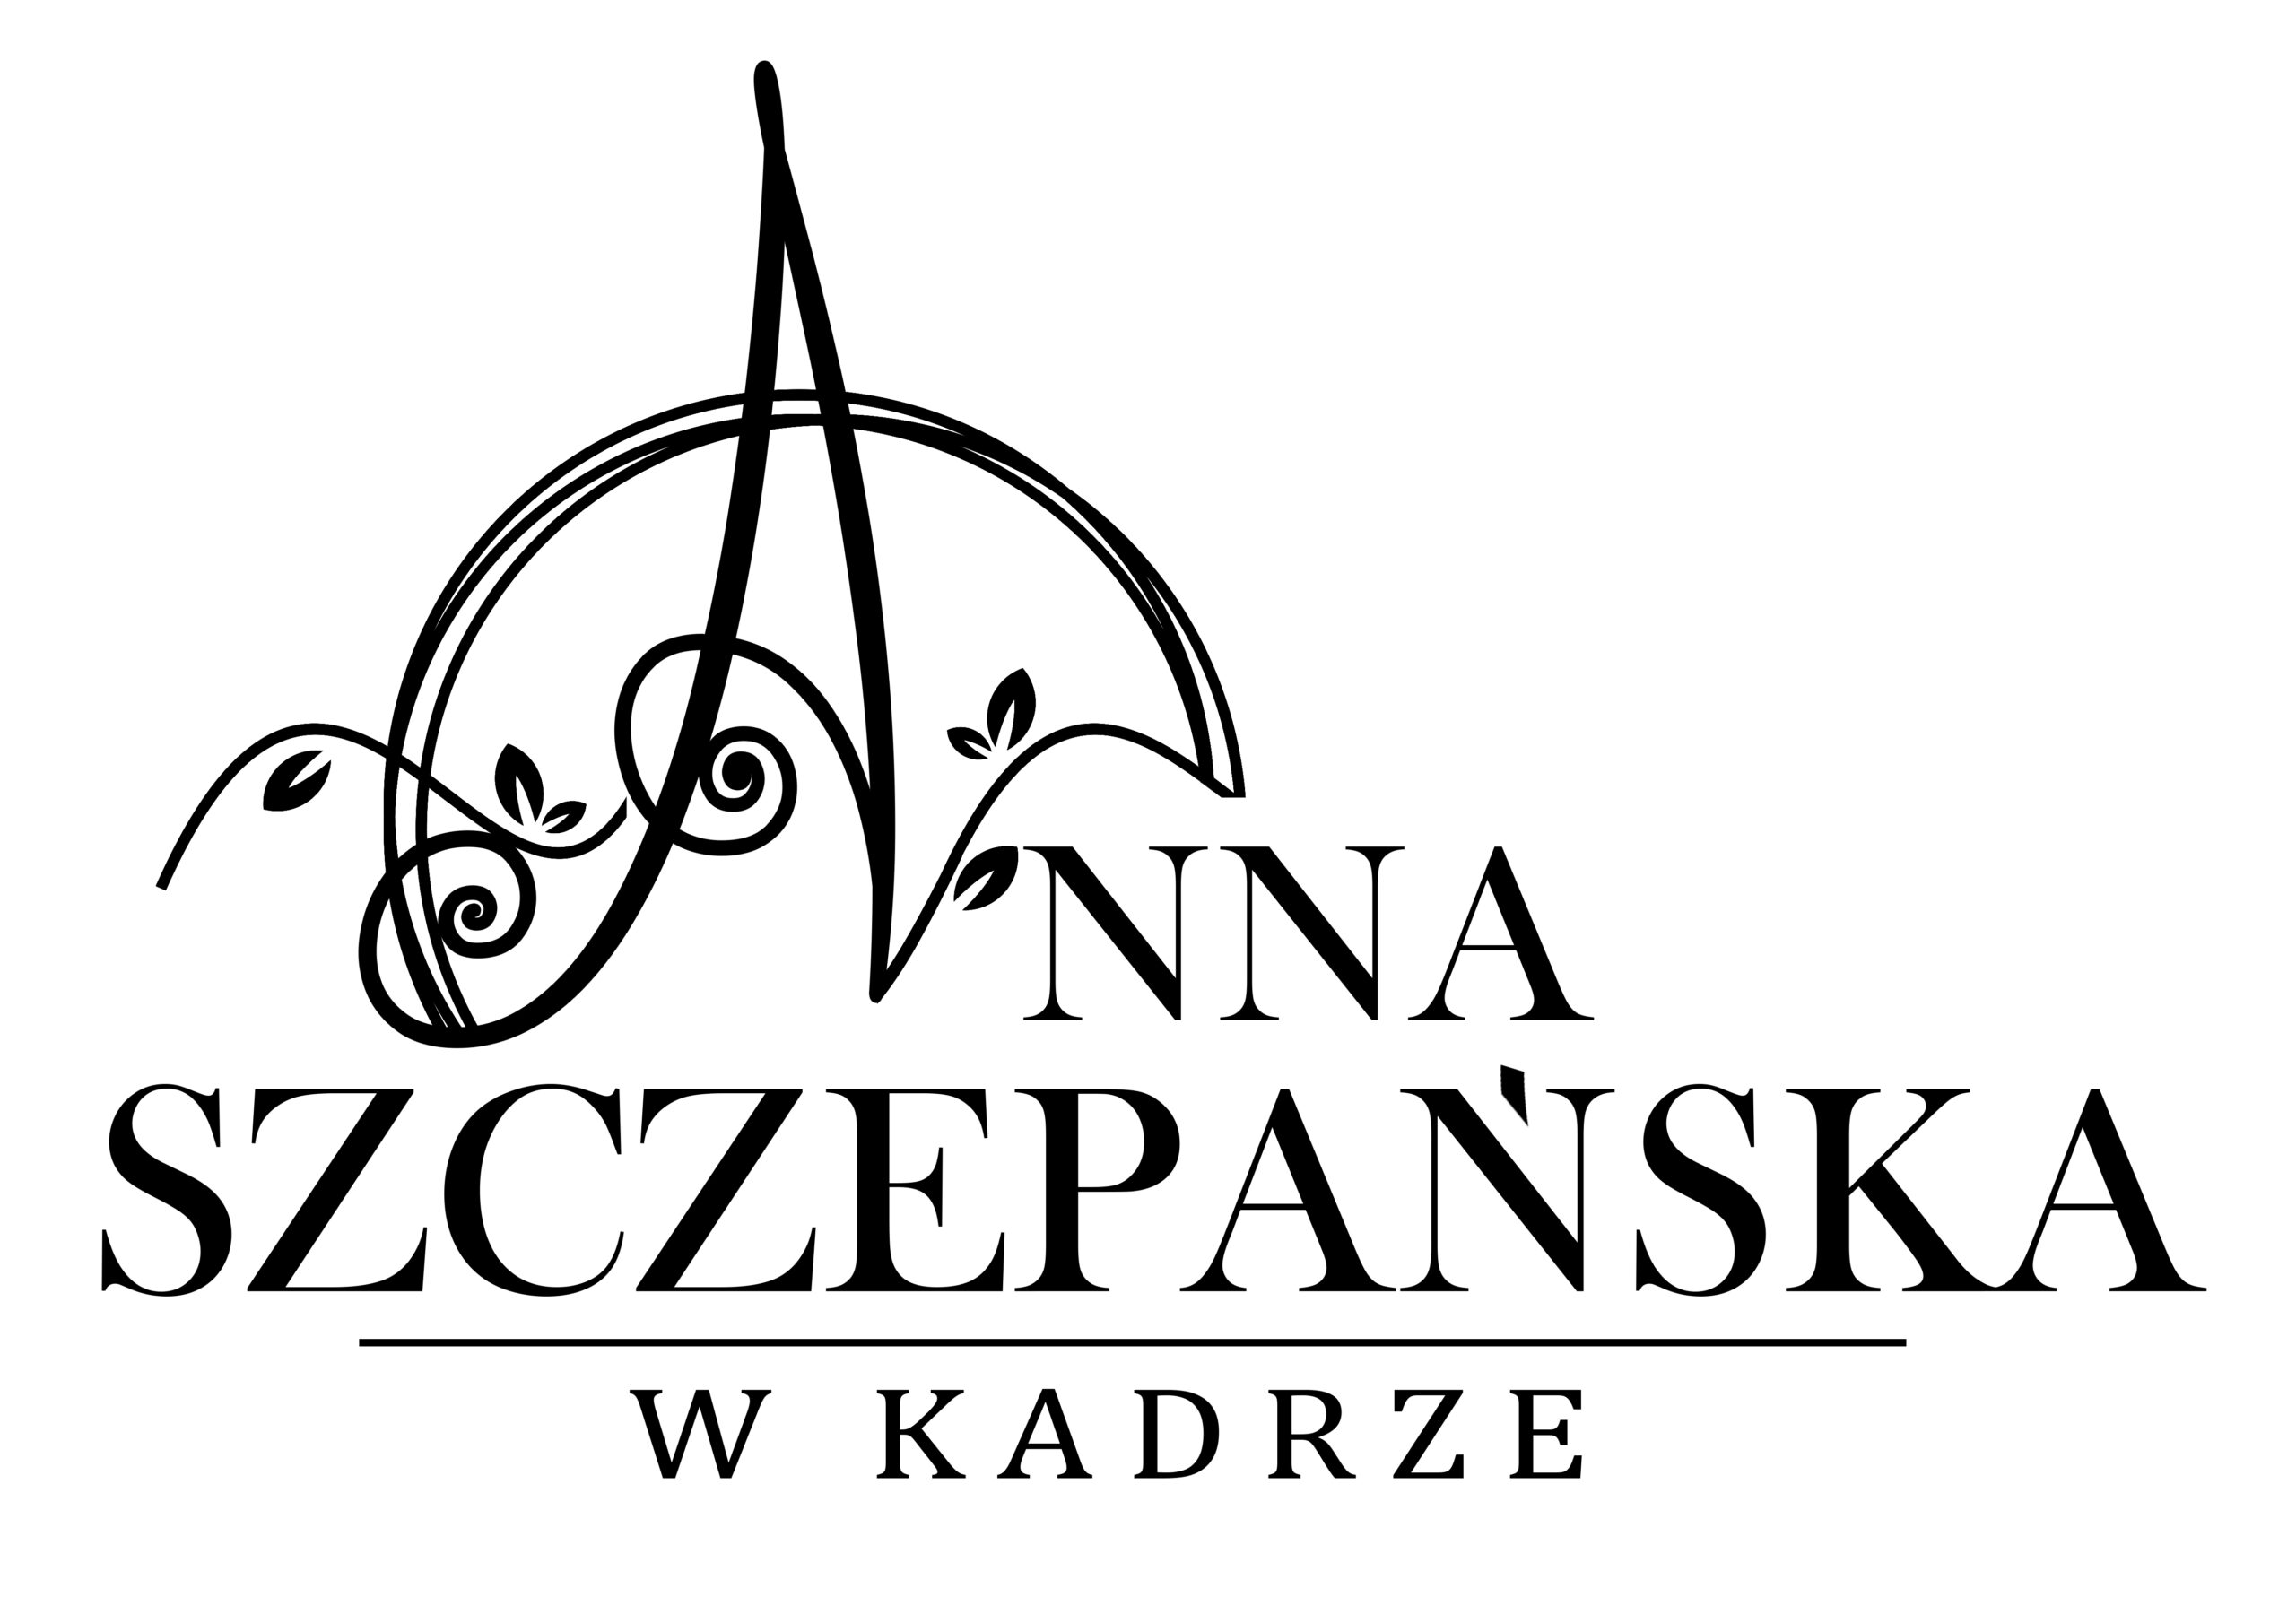 W Kadrze - Anna Szczepańska